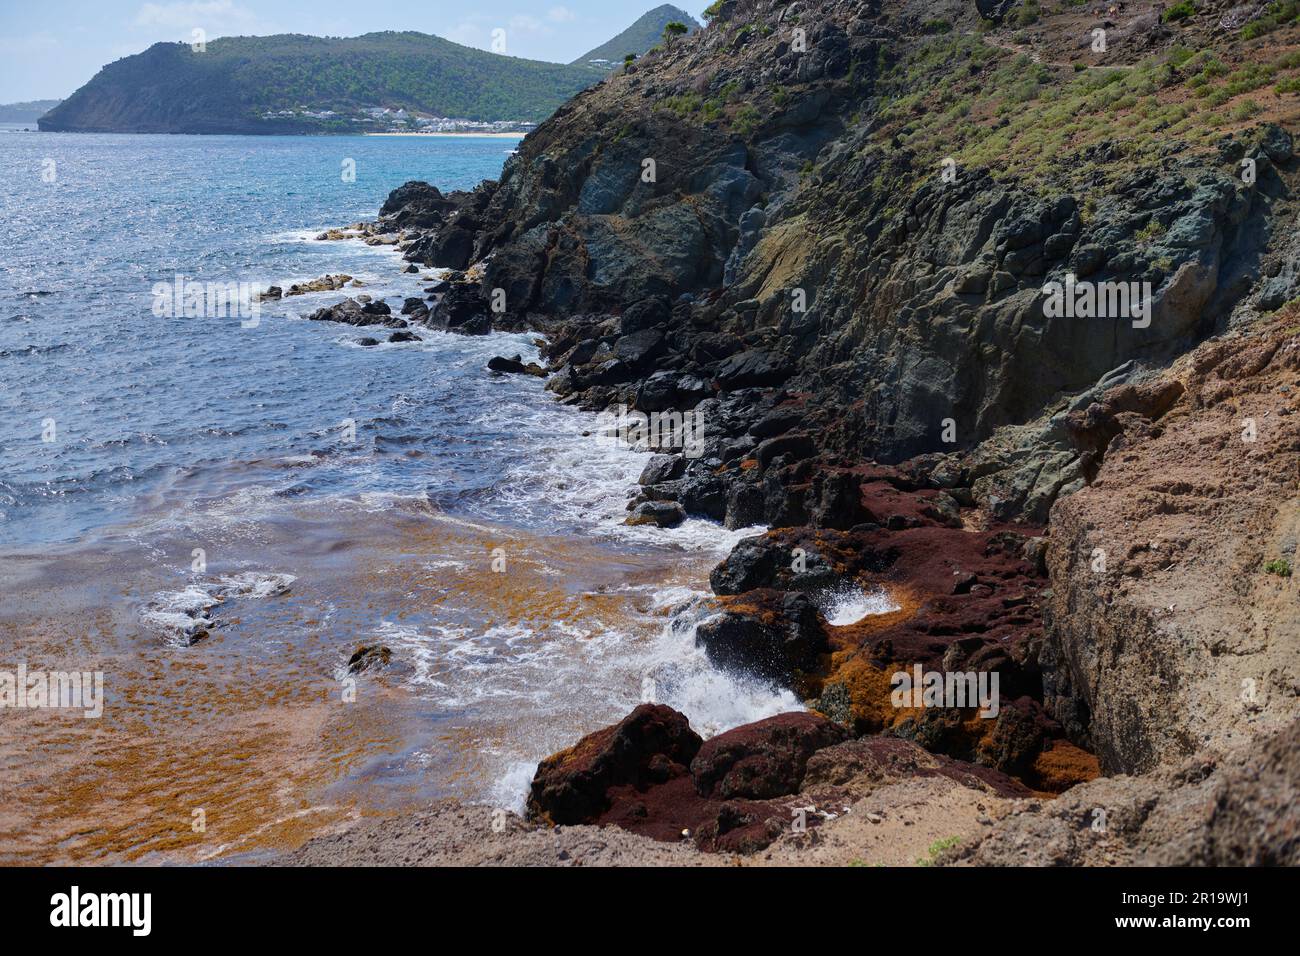 Seegras wird an der Küste von St. barts in einer Bucht neben Colombier Beach angespült Stockfoto